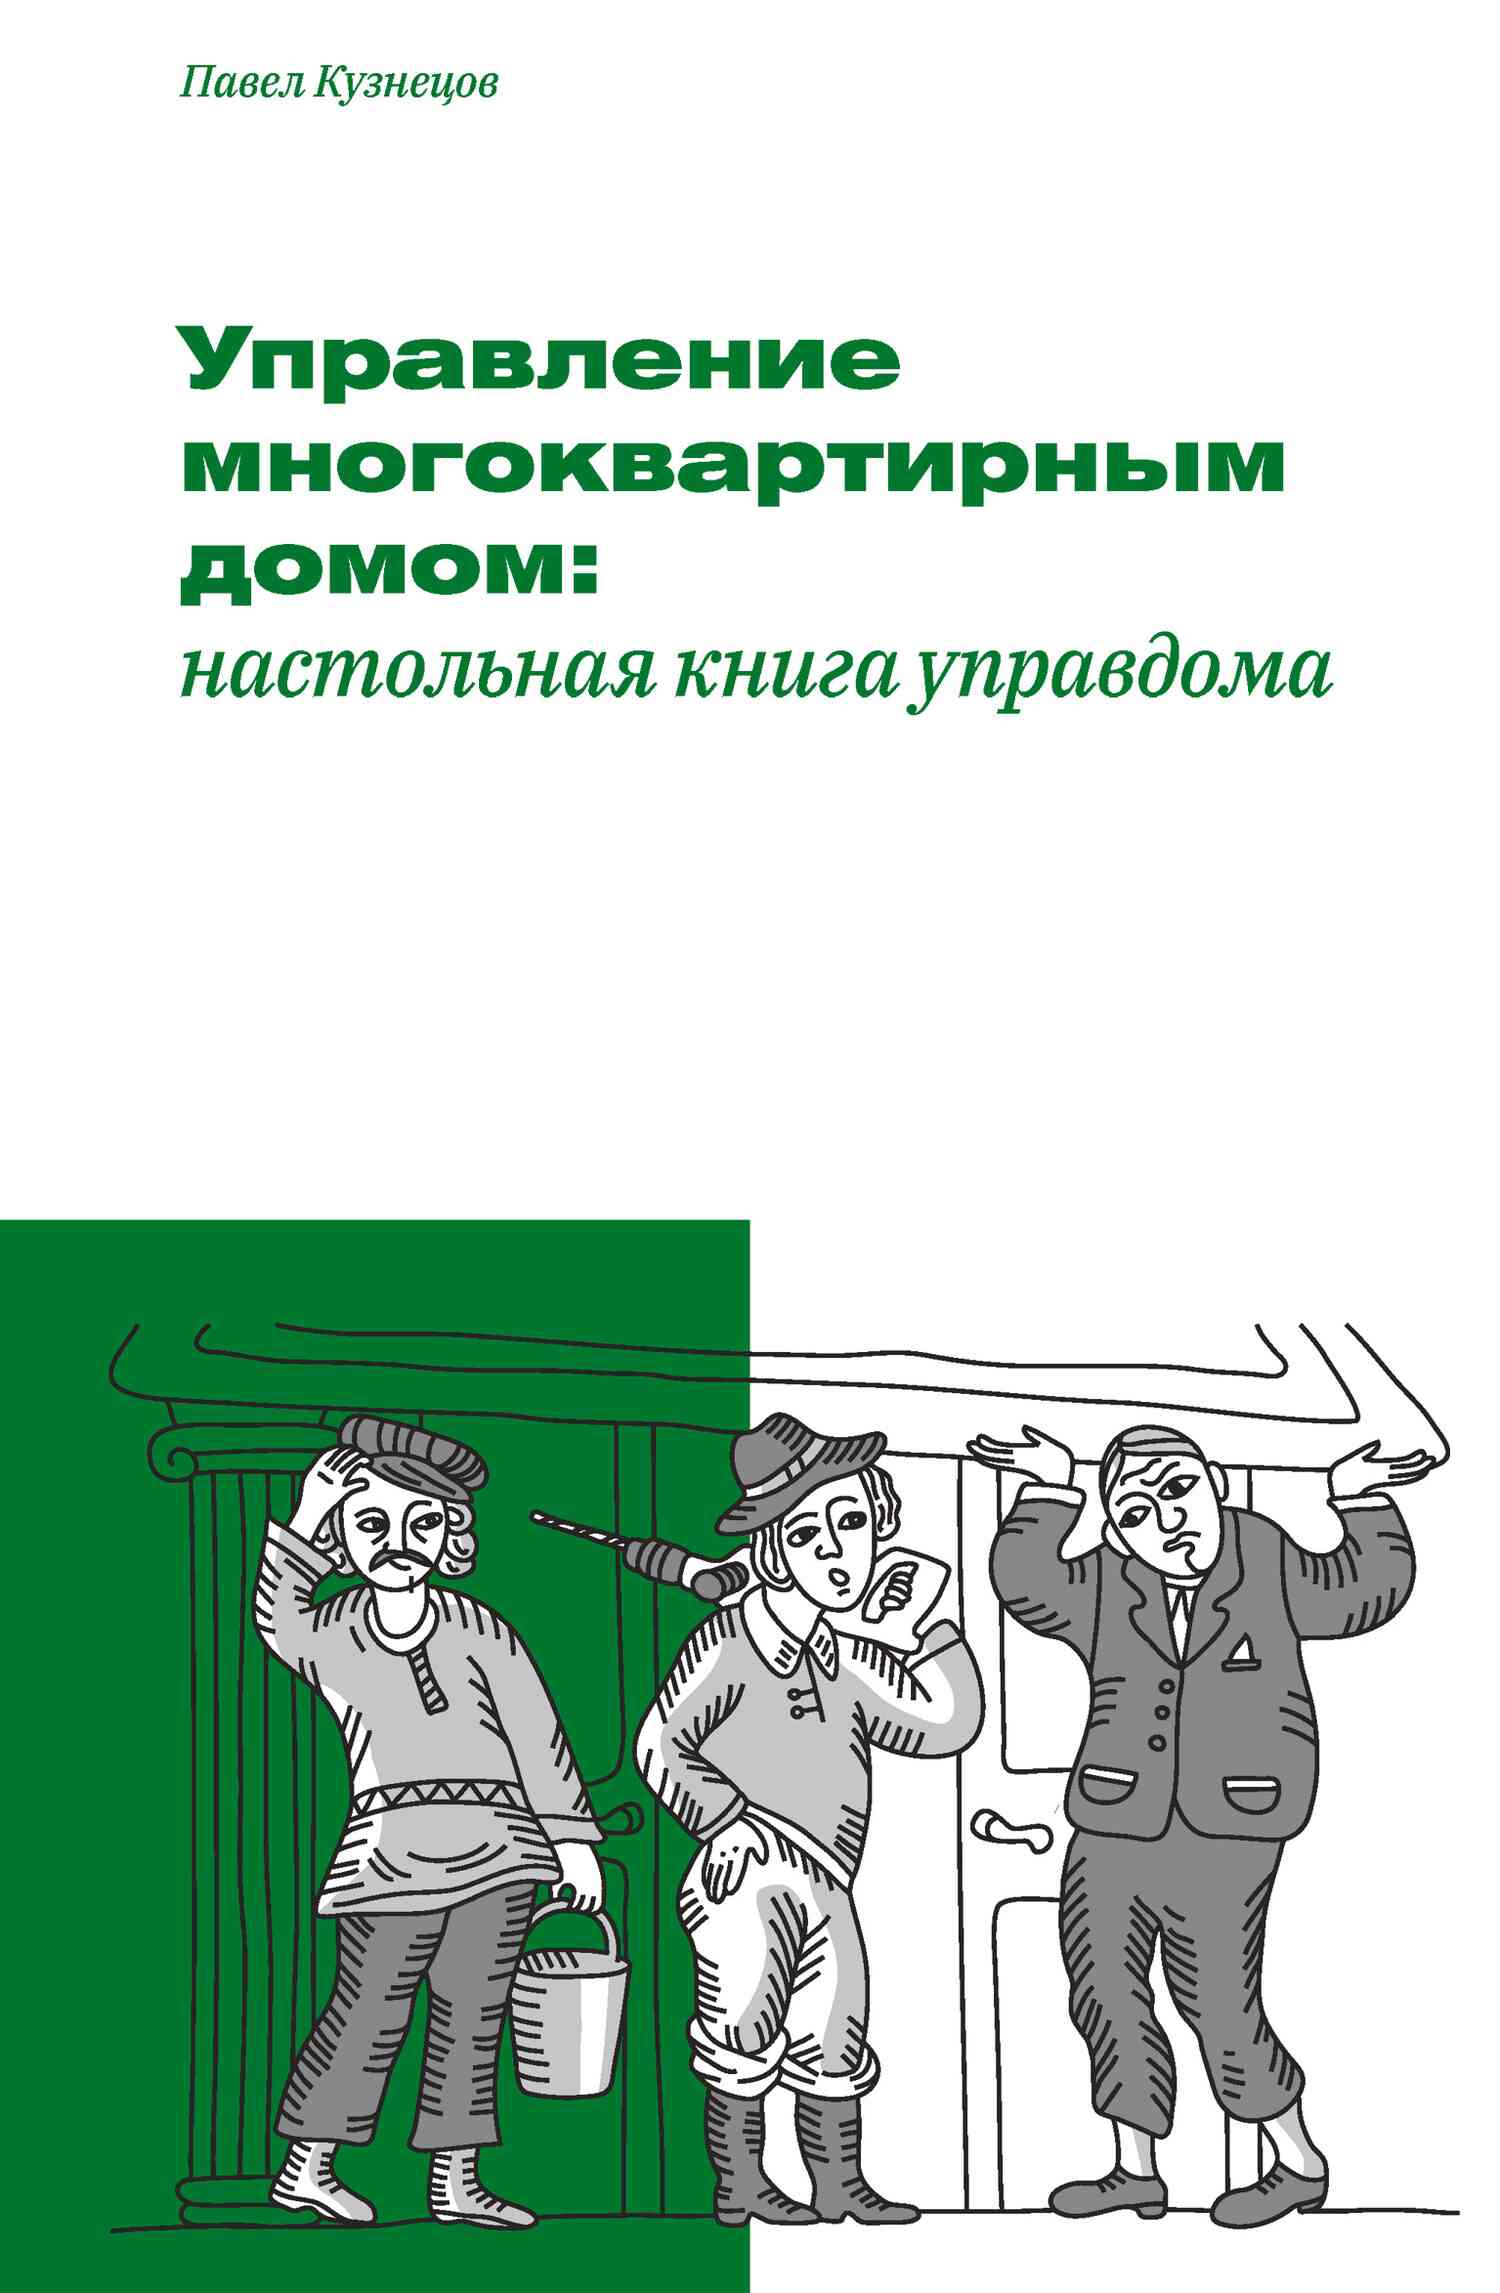 Кузнецов Павел - Управление многоквартирным домом: настольная книга управдома скачать бесплатно